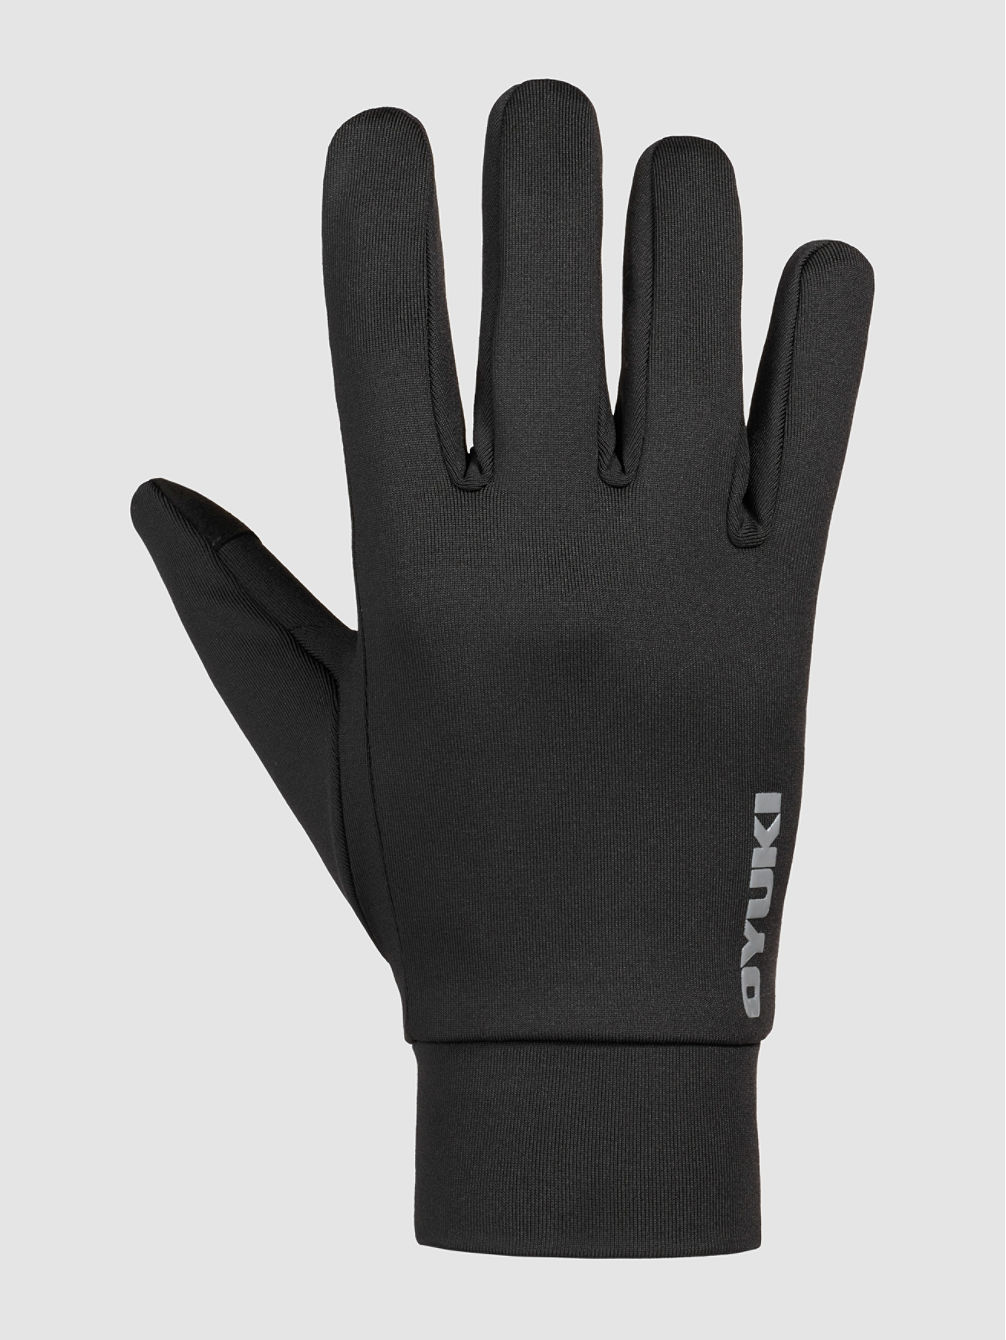 Proliner Liner Gloves